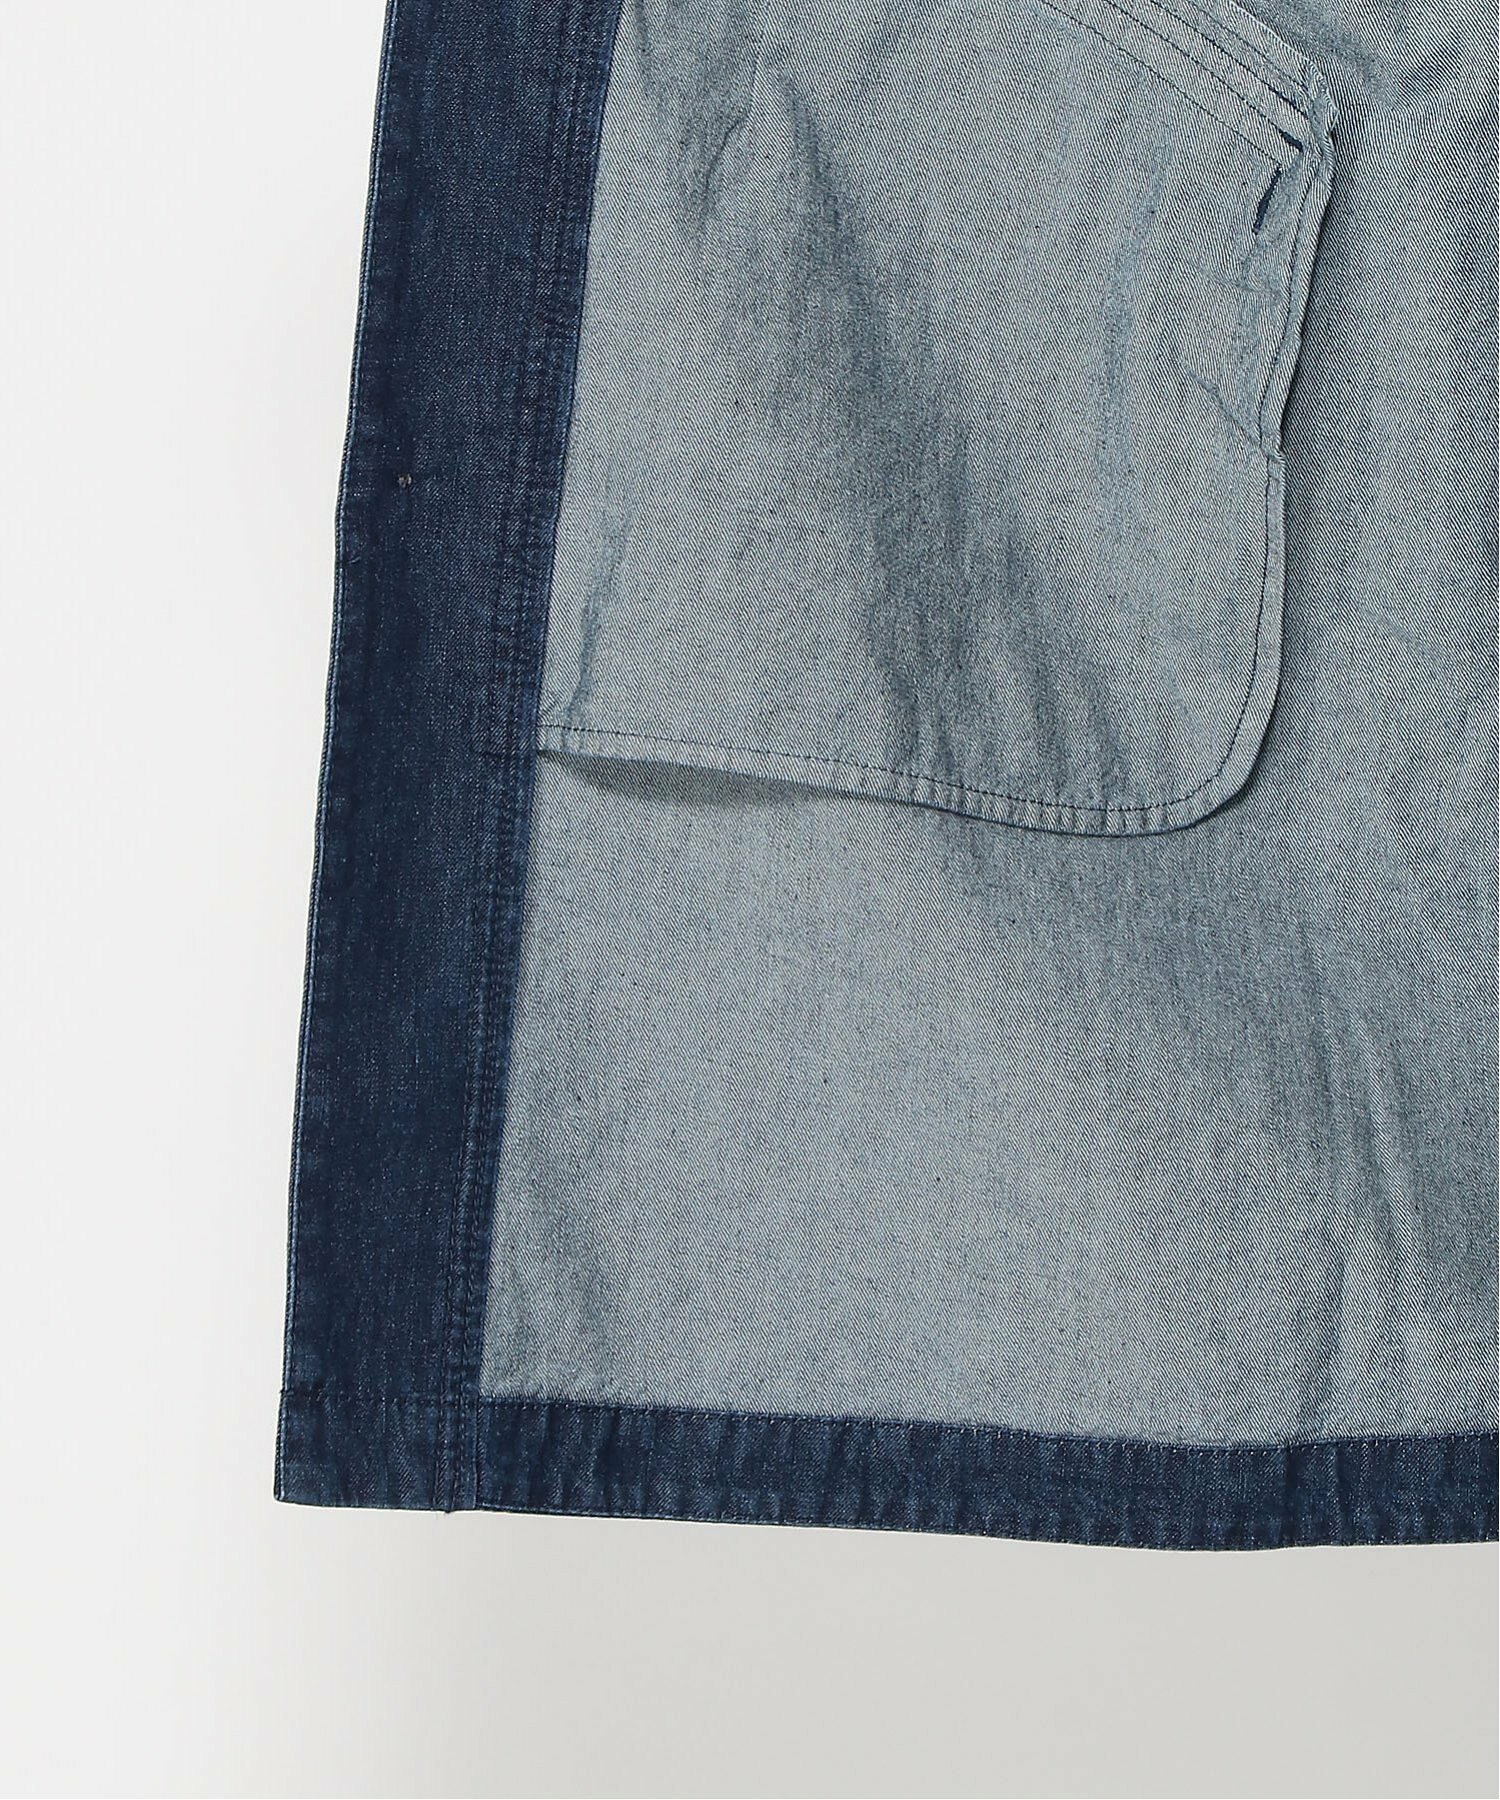 ツイル/デニム デイジー&フラワー刺繍ロングコート